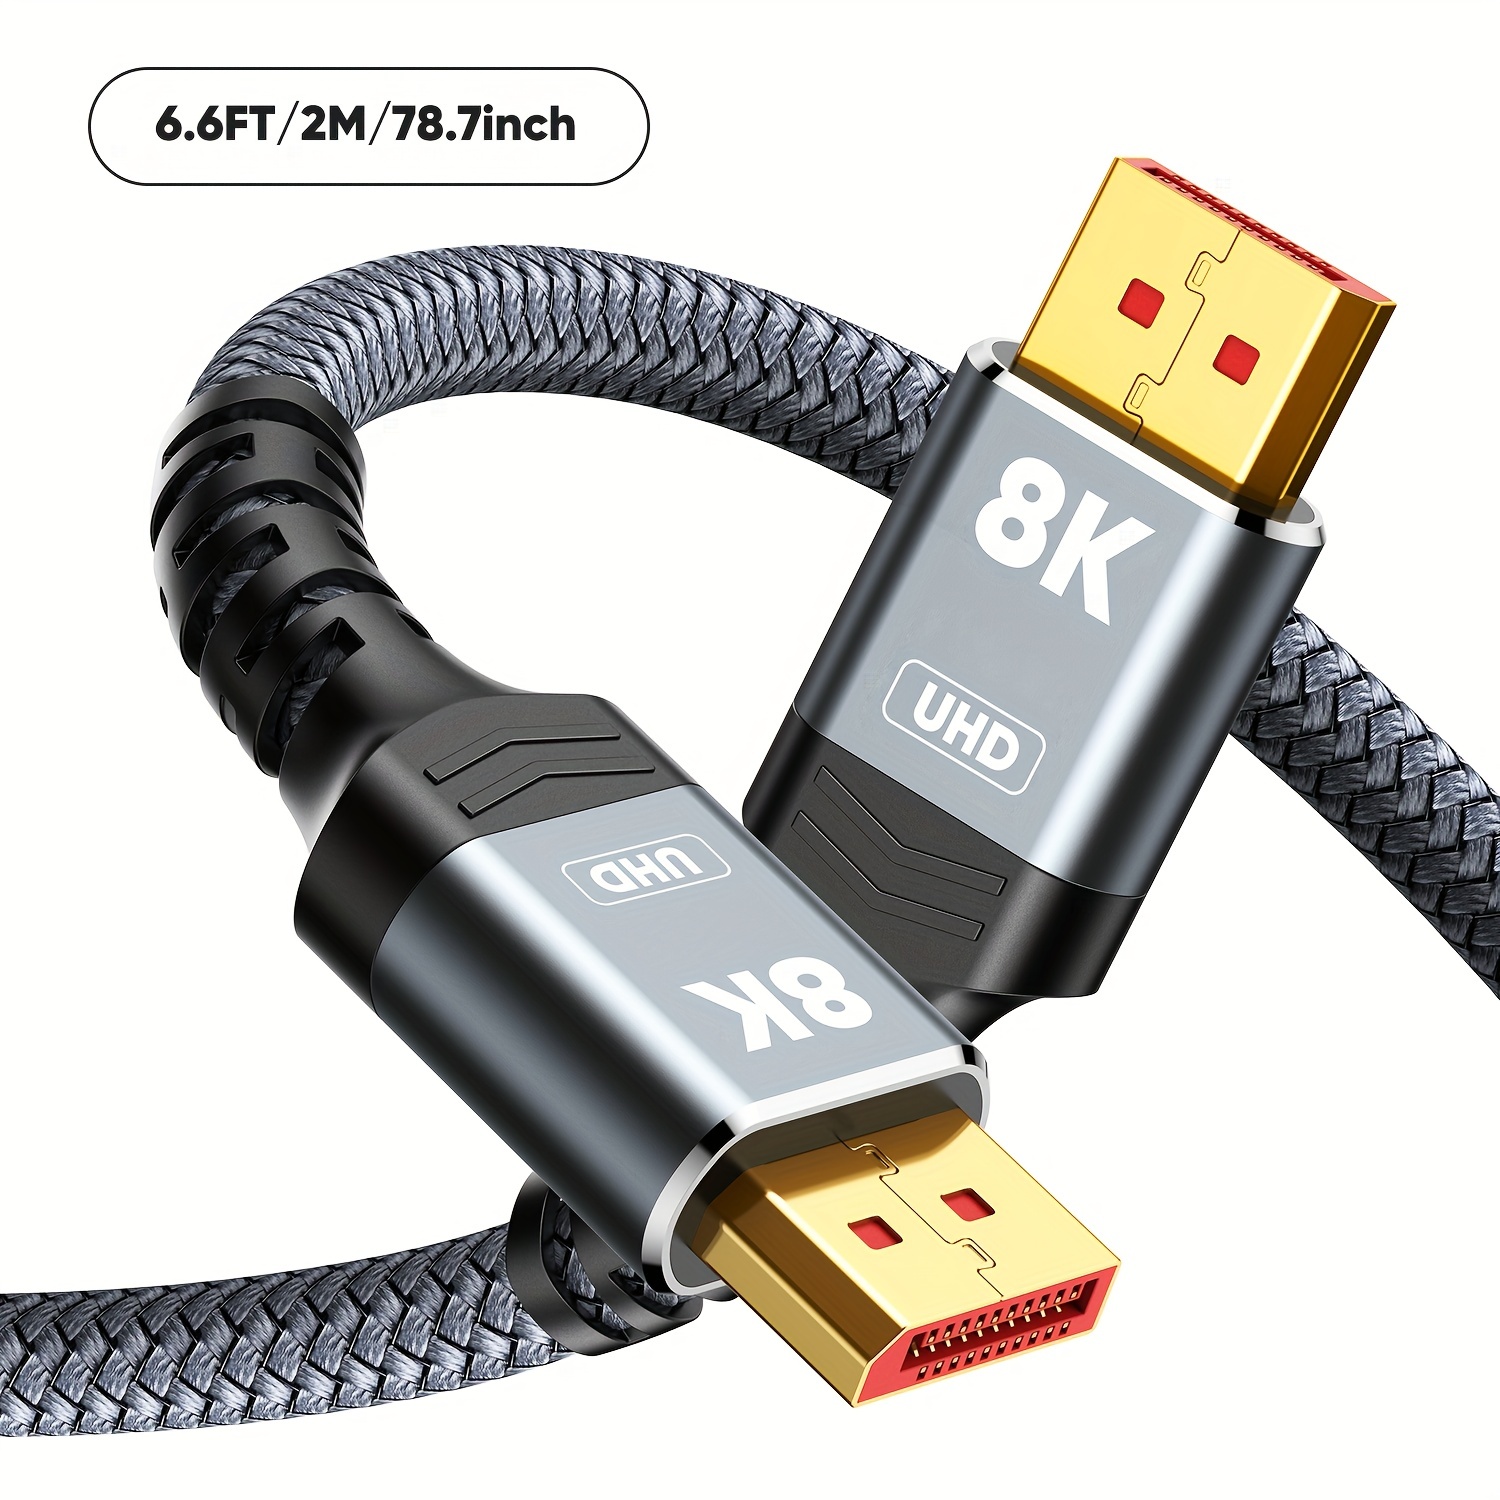  Cable DisplayPort a HDMI 4K de 6 pies, 4K DP (puerto de  pantalla) a HDMI, adaptador de cable trenzado de 6 pies macho a macho,  soporta video y audio (4k, 2160P